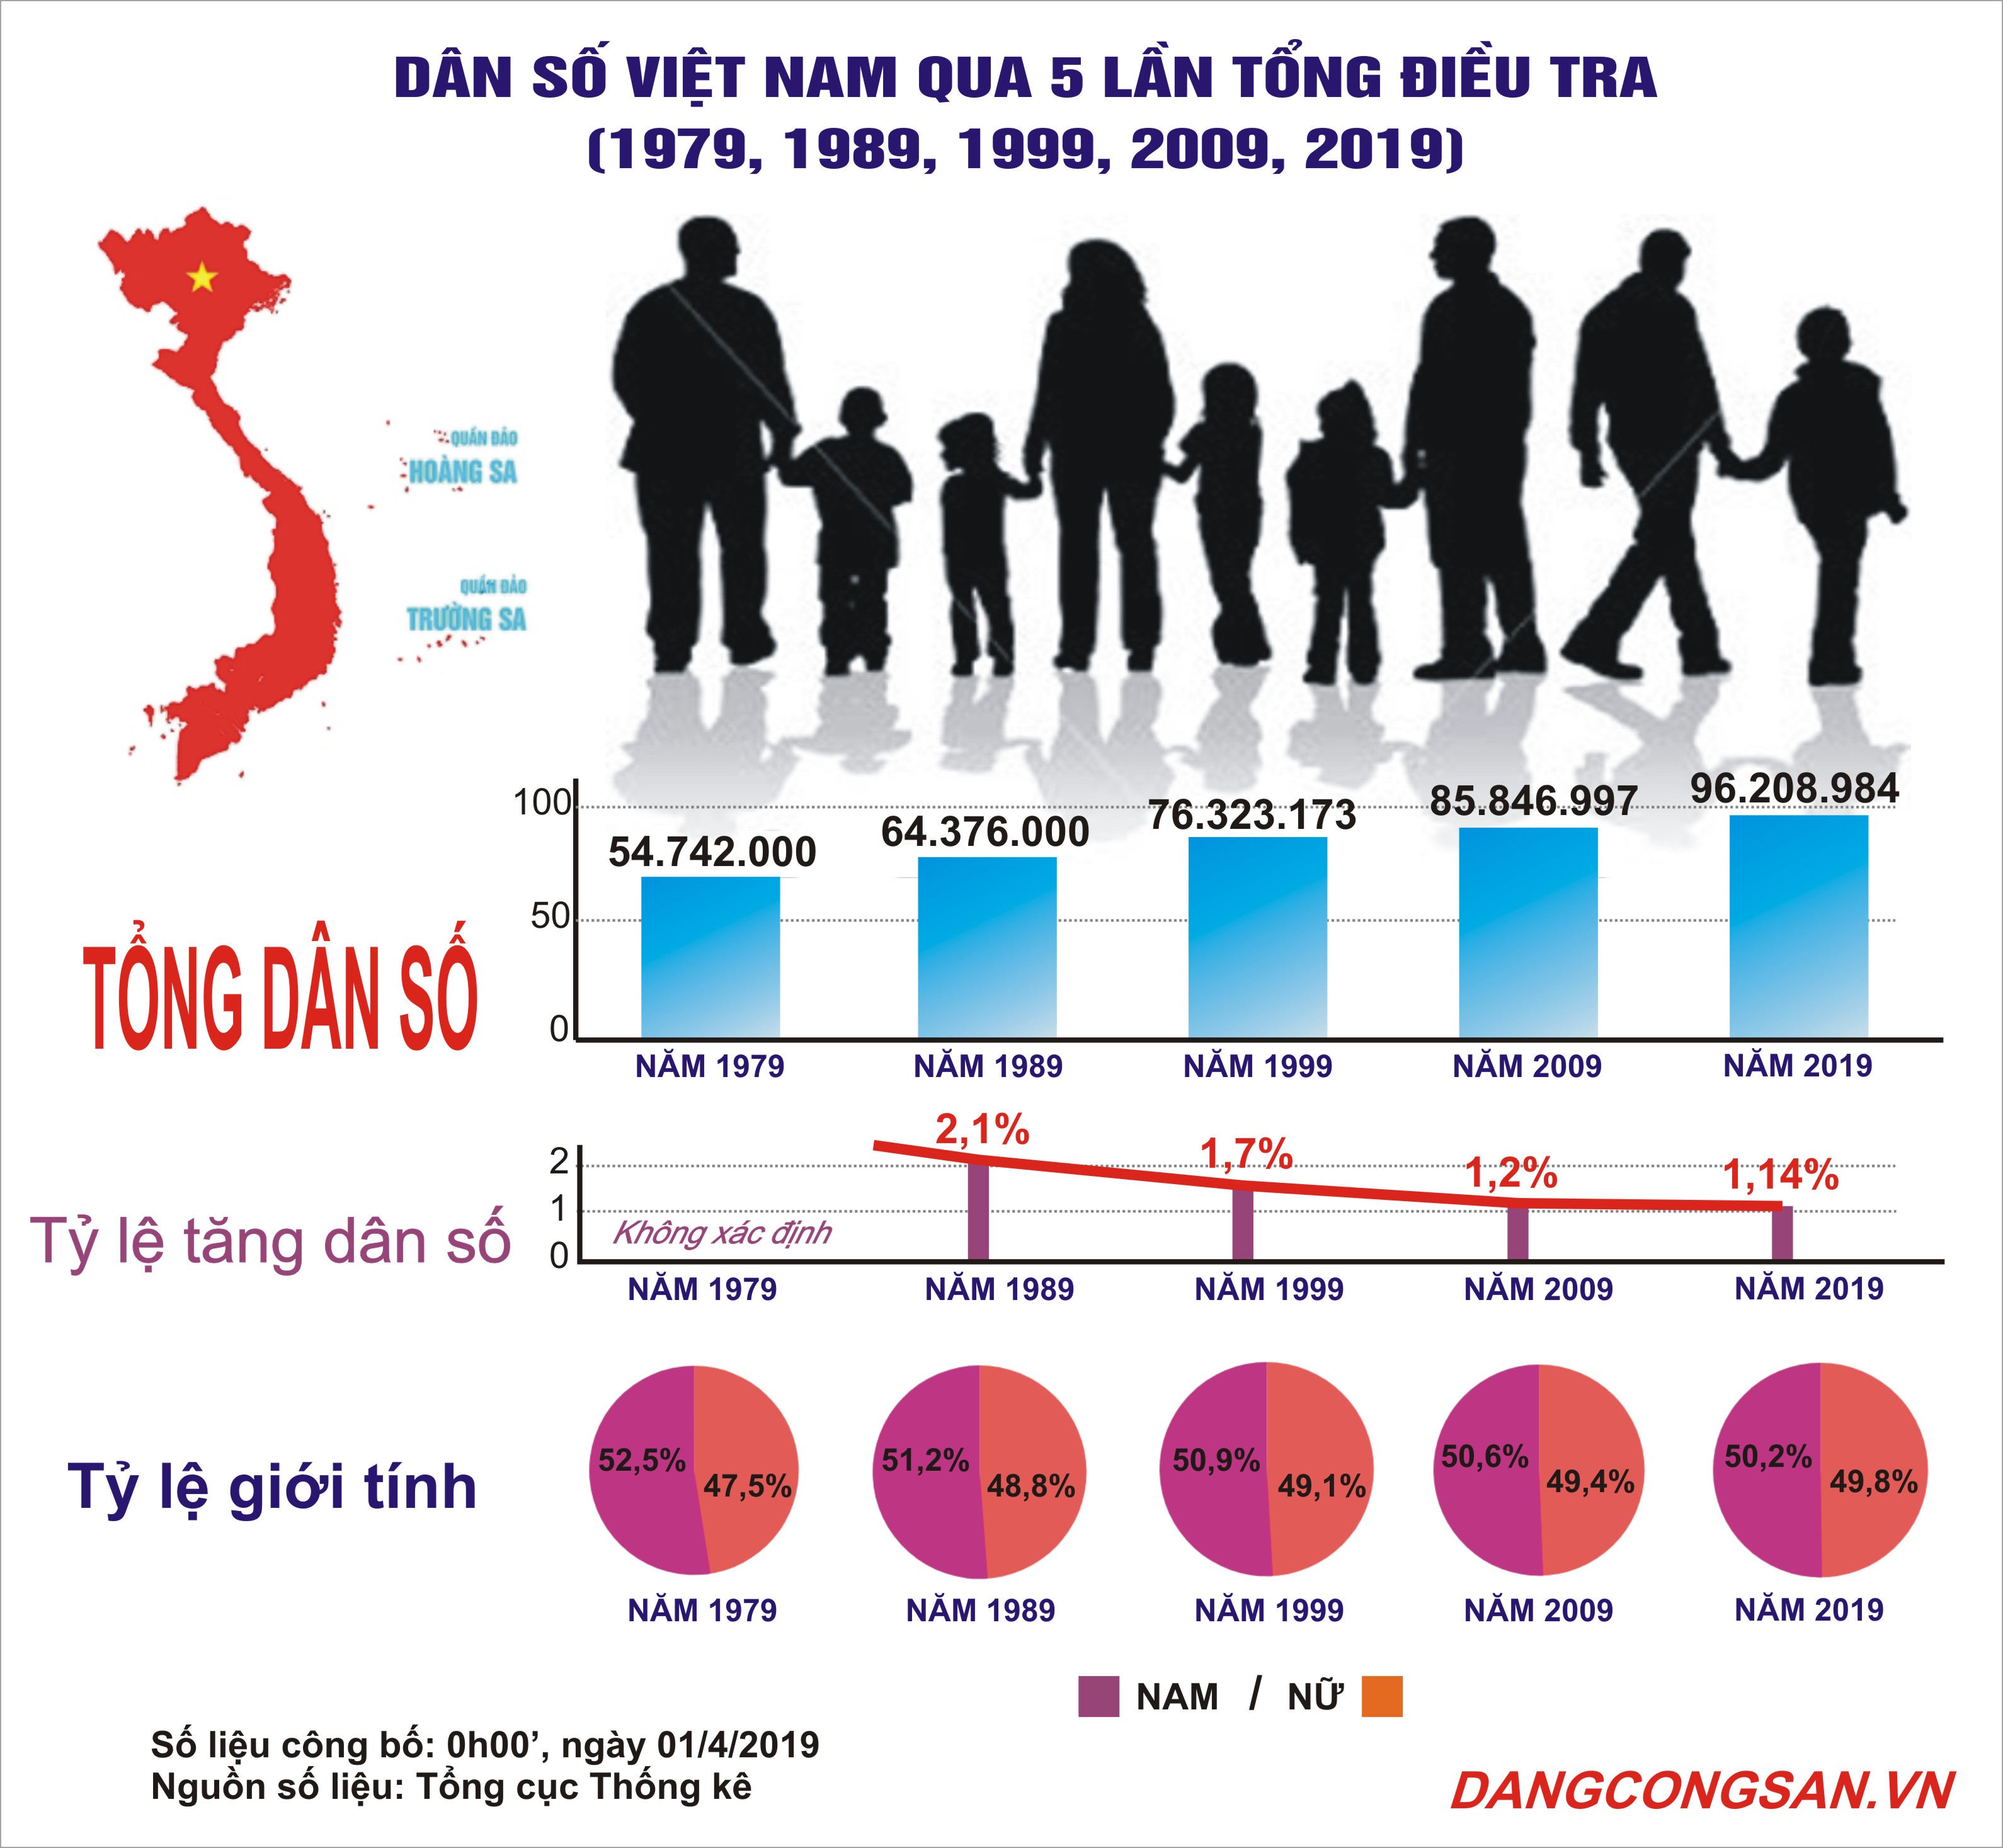 Điều tra dân số Việt Nam: Hiểu rõ hơn về cơ cấu dân số, điều tra dân số là một công việc quan trọng giúp cho hành chính và phát triển đất nước. Hãy xem những hình ảnh liên quan để hiểu thêm về công trình này.